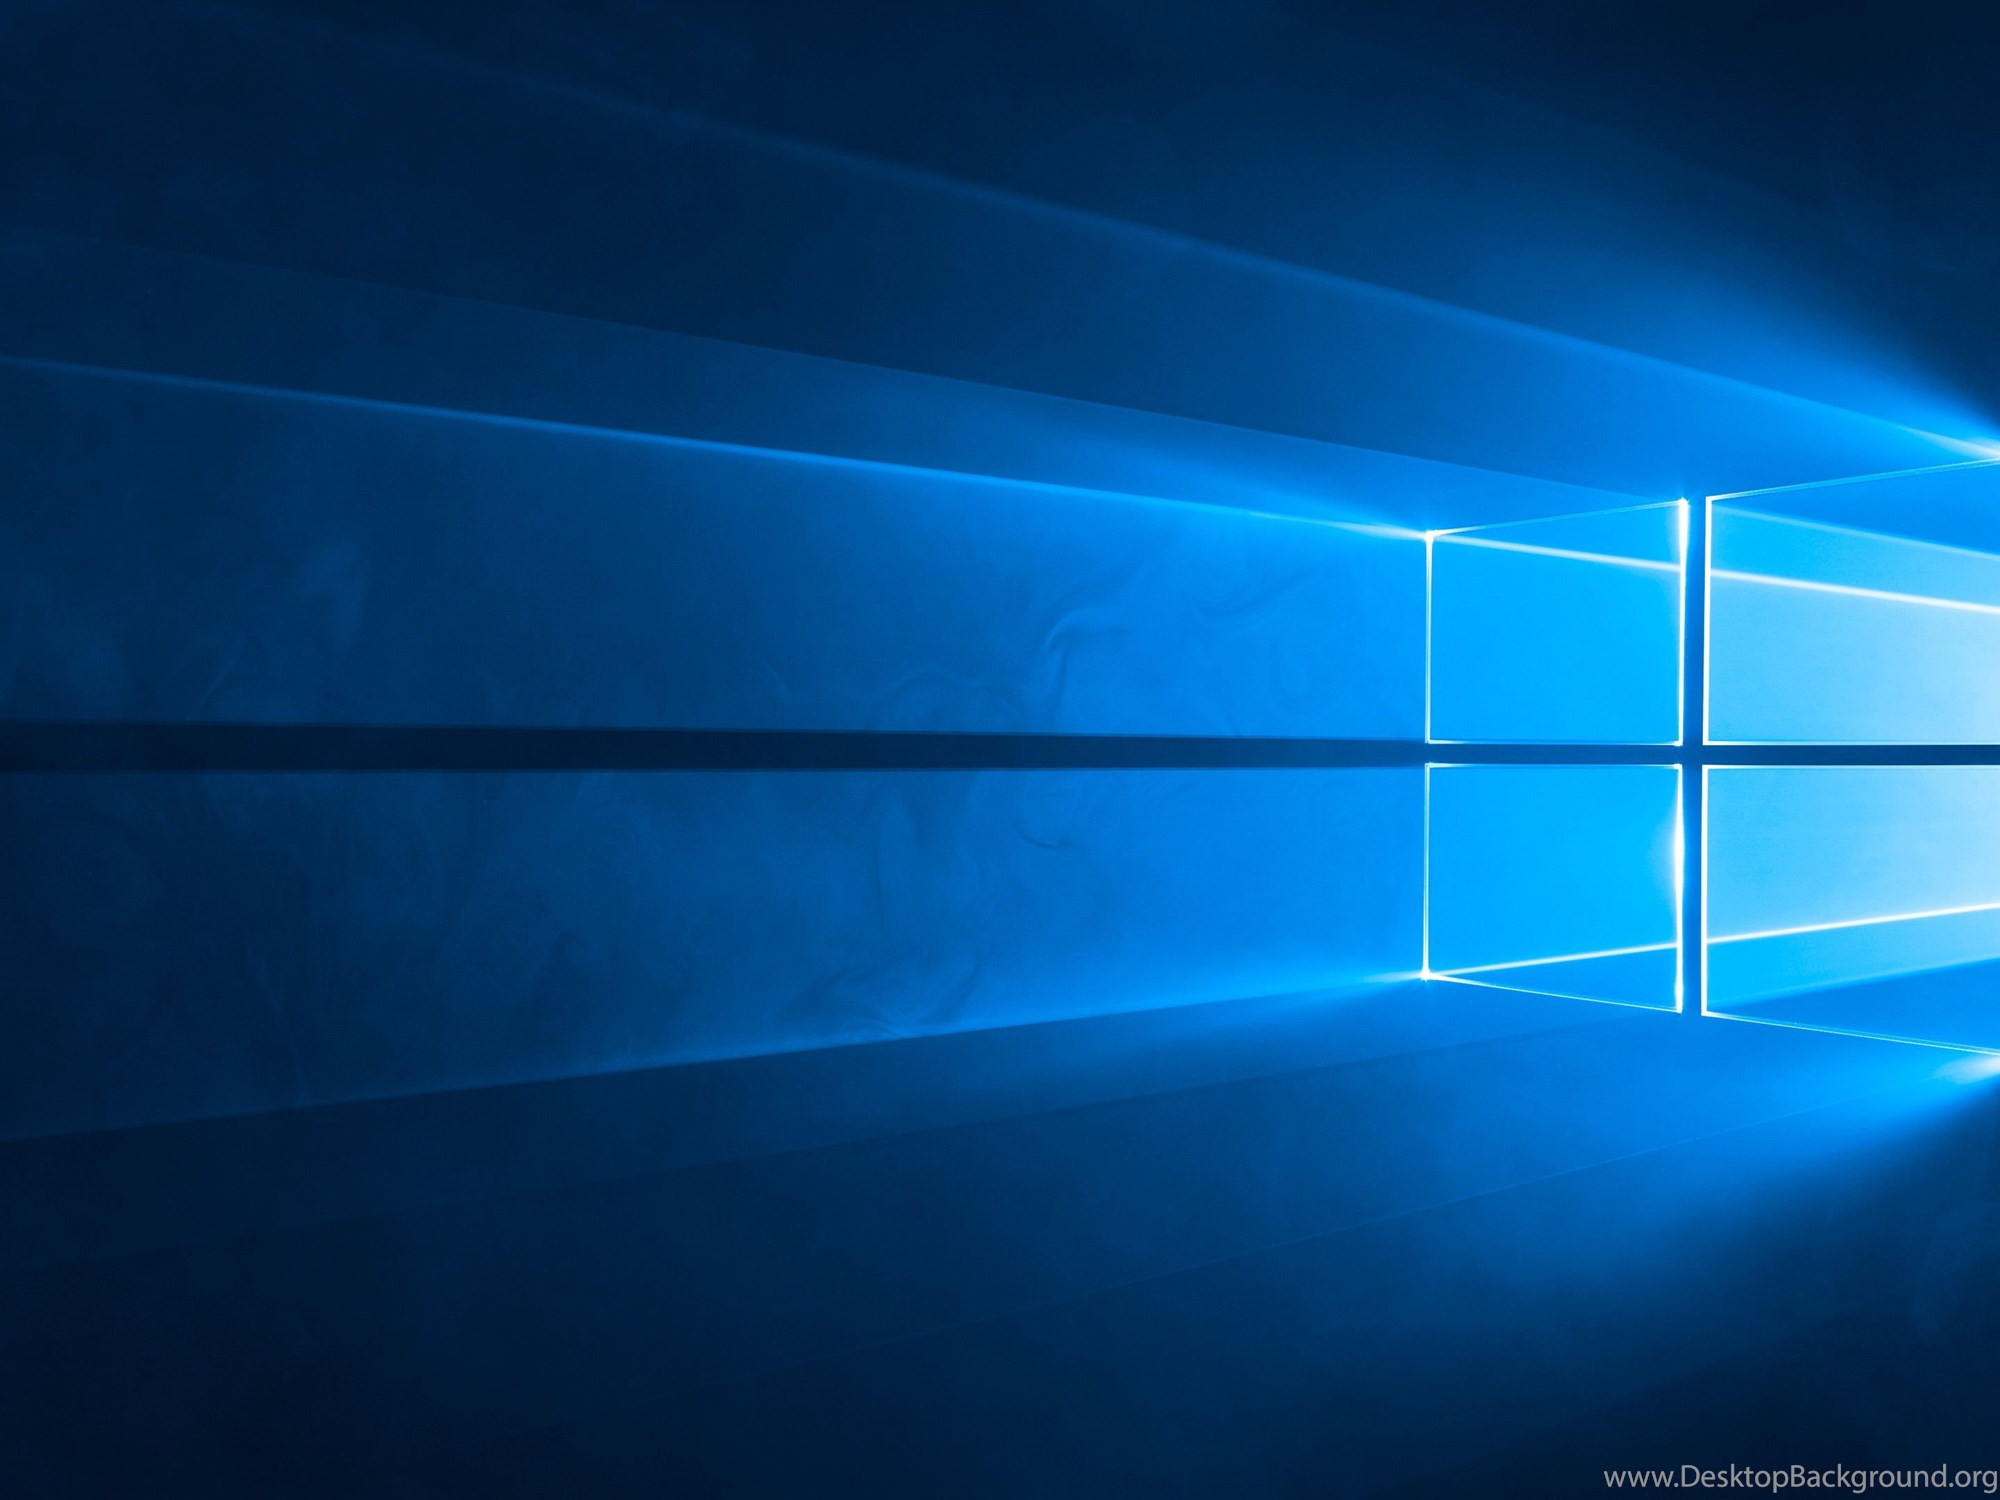 Windows dynamic. Виндовс 10 Hero. Виндовс 10x. Рабочий стол Windows 10. Обои Windows 10.